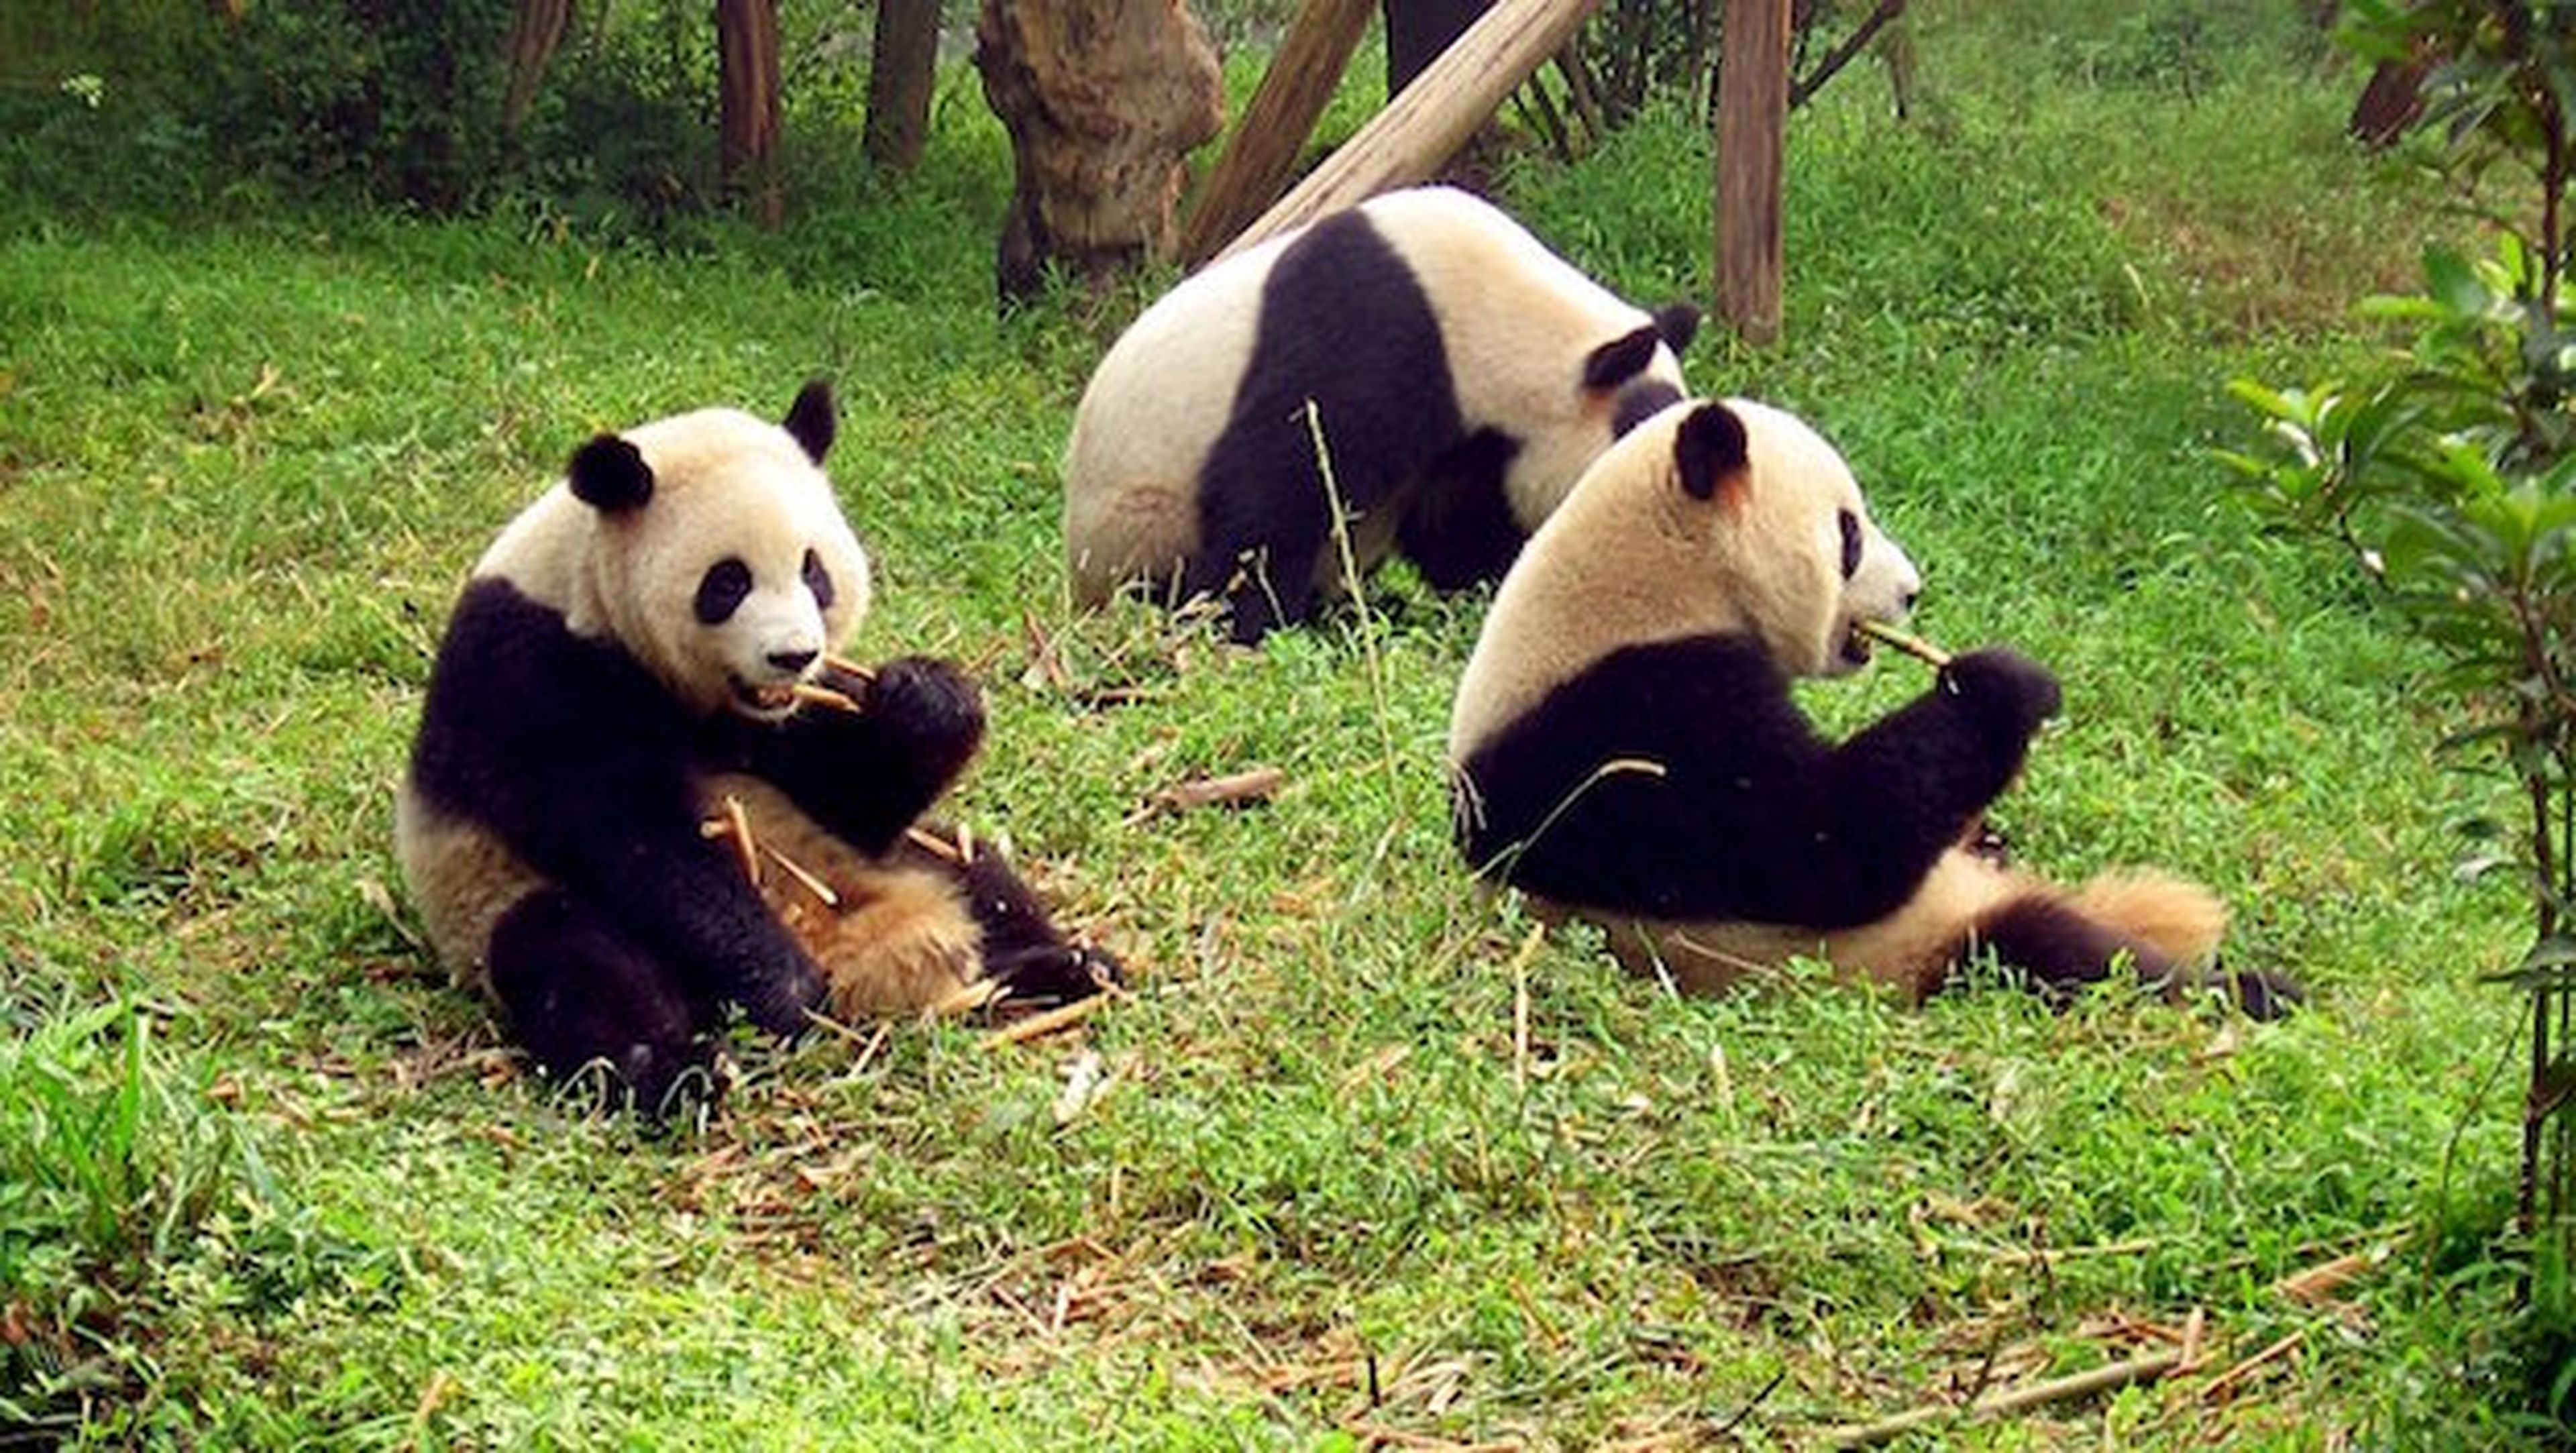 La ingeniosa decodificación del lenguaje de los osos panda, Explora